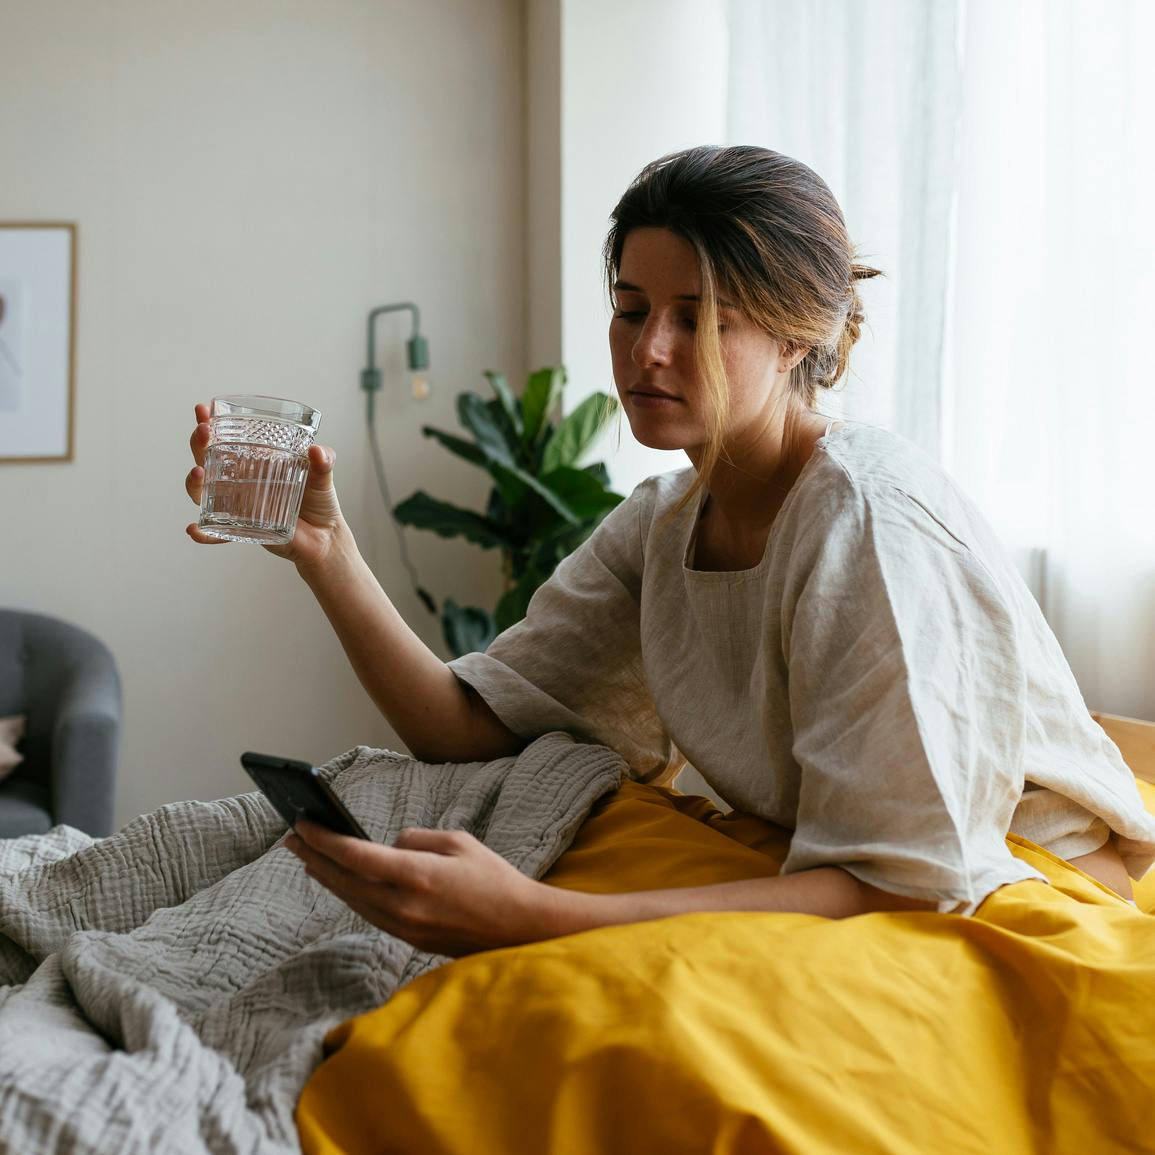 Mujer joven enferma en cama, sentada, debajo de mantas pesadas, con un vaso de agua en una mano y su teléfono en la otra, mirando el teléfono